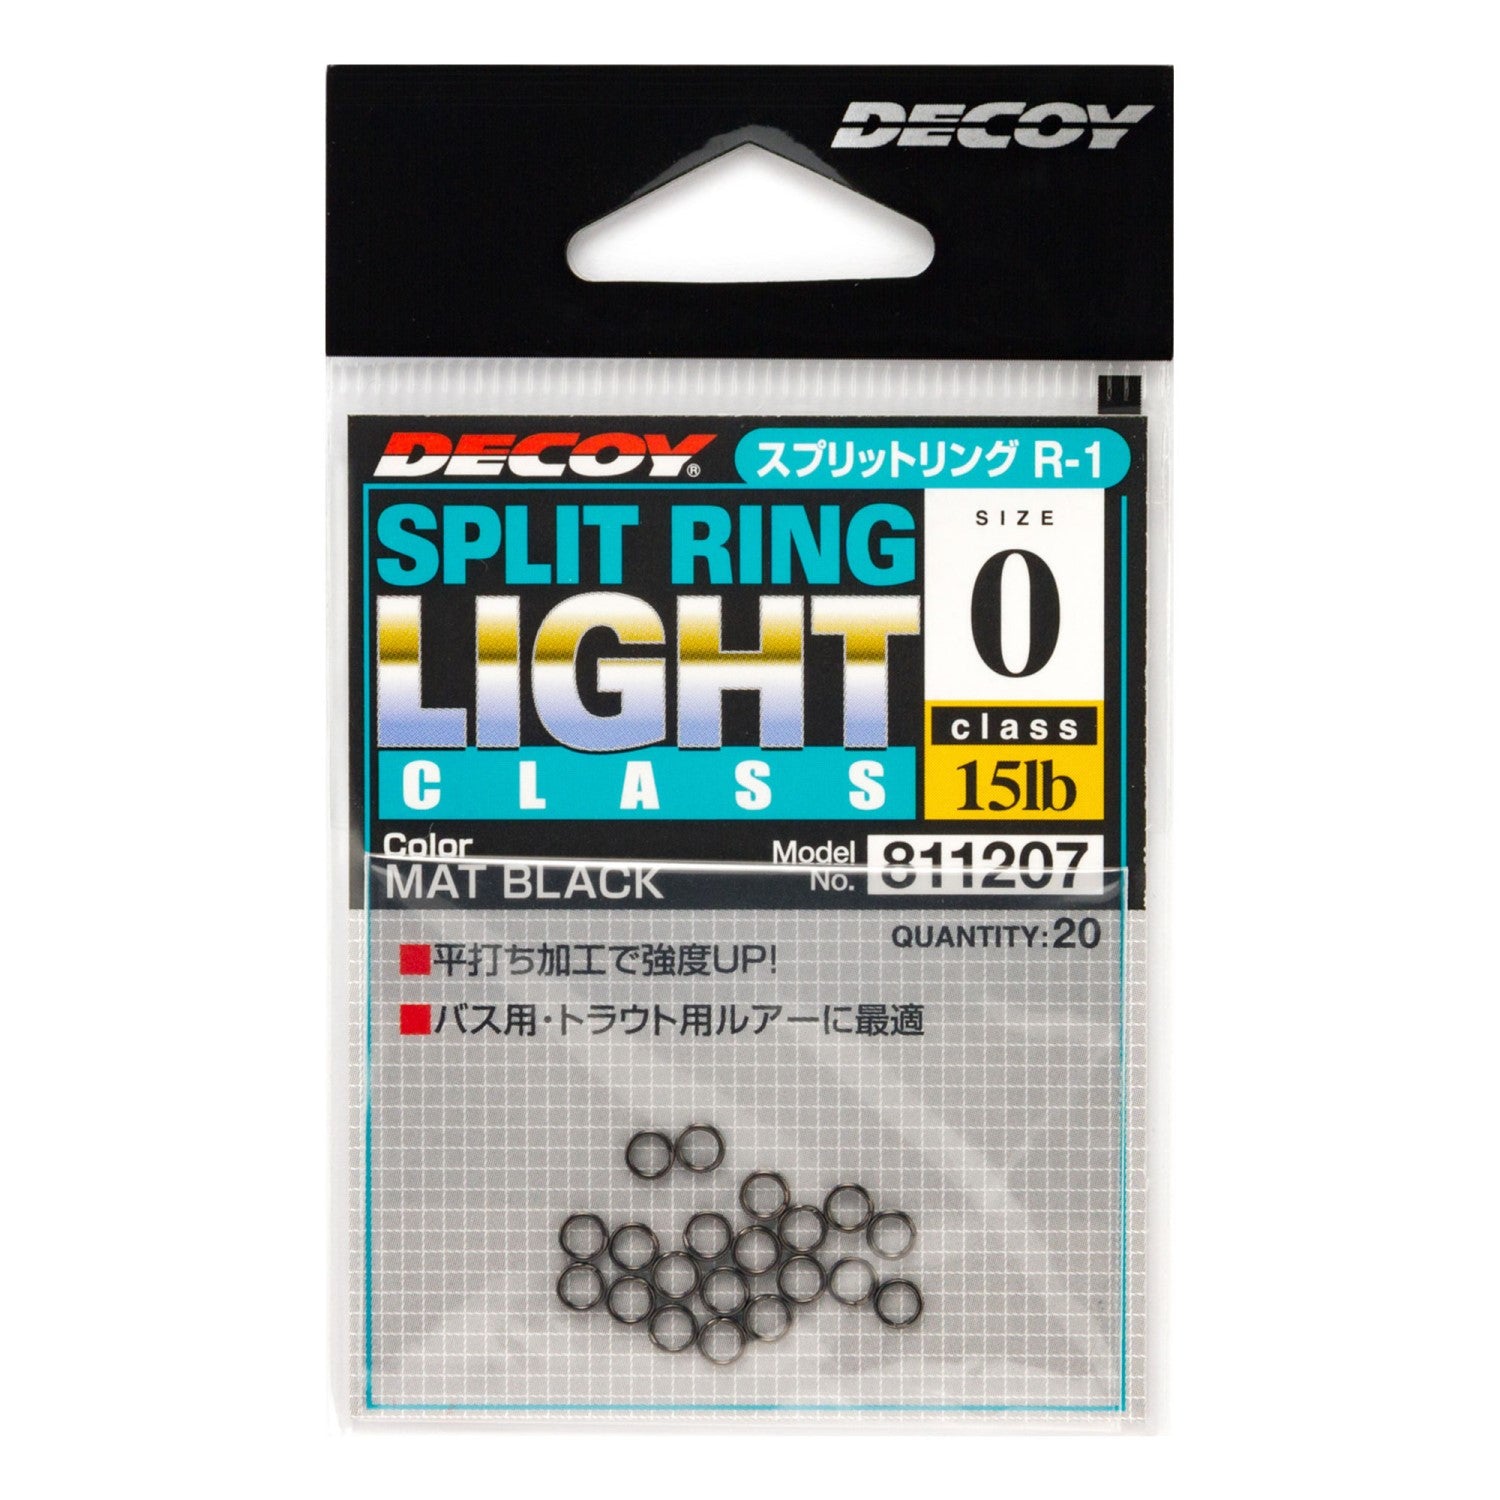 Decoy Spilt Ring Light Pack Cover